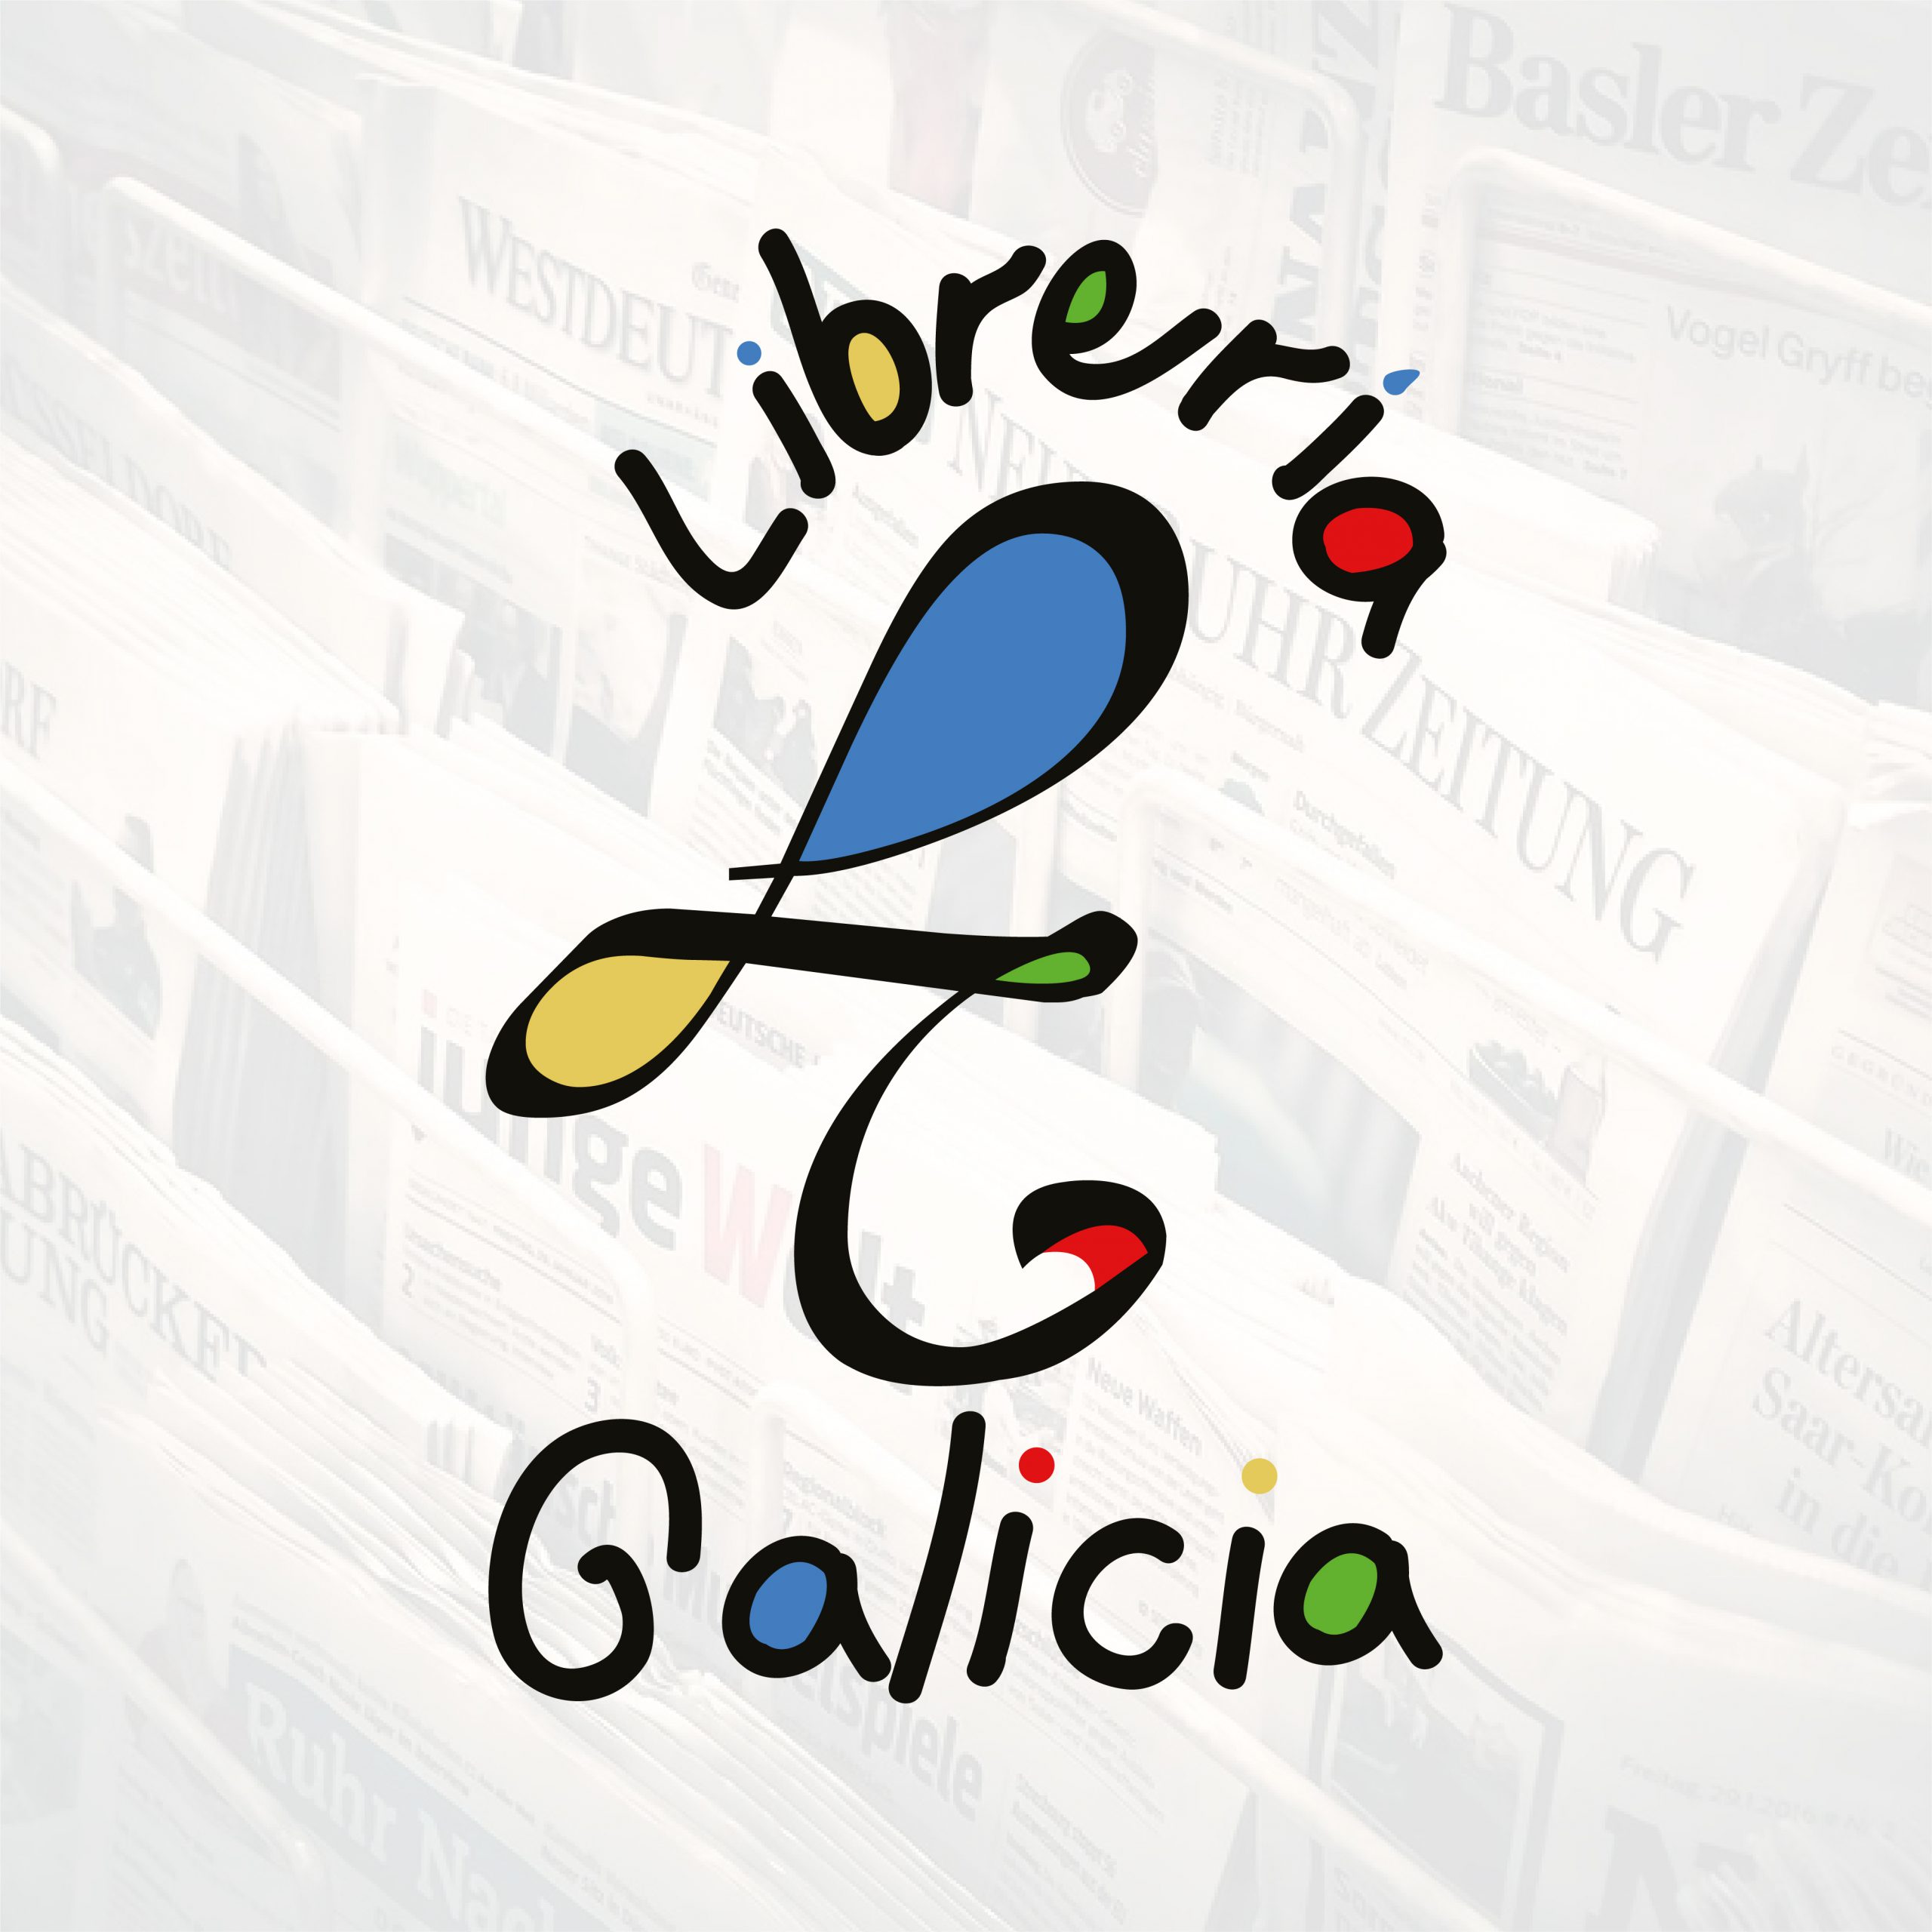 Imagen Corporativa Librería Galicia